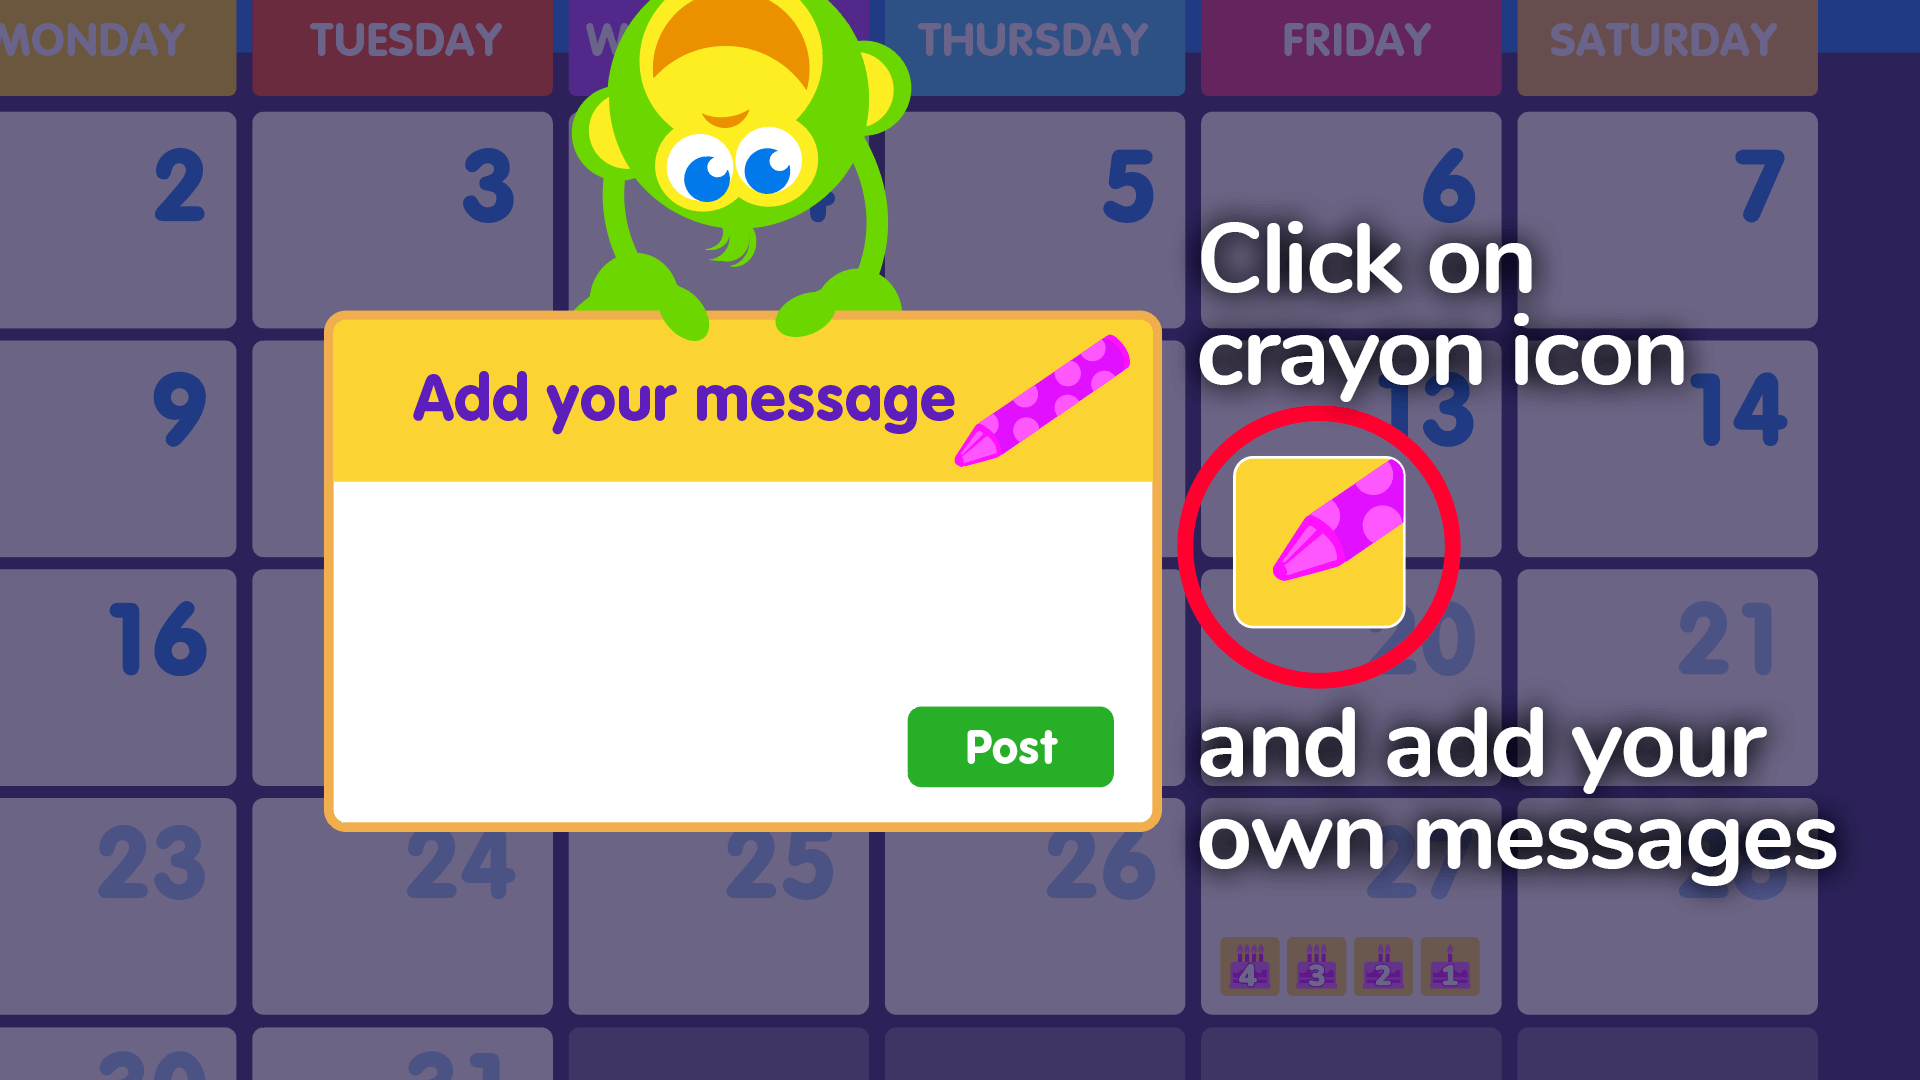 Calendar - message